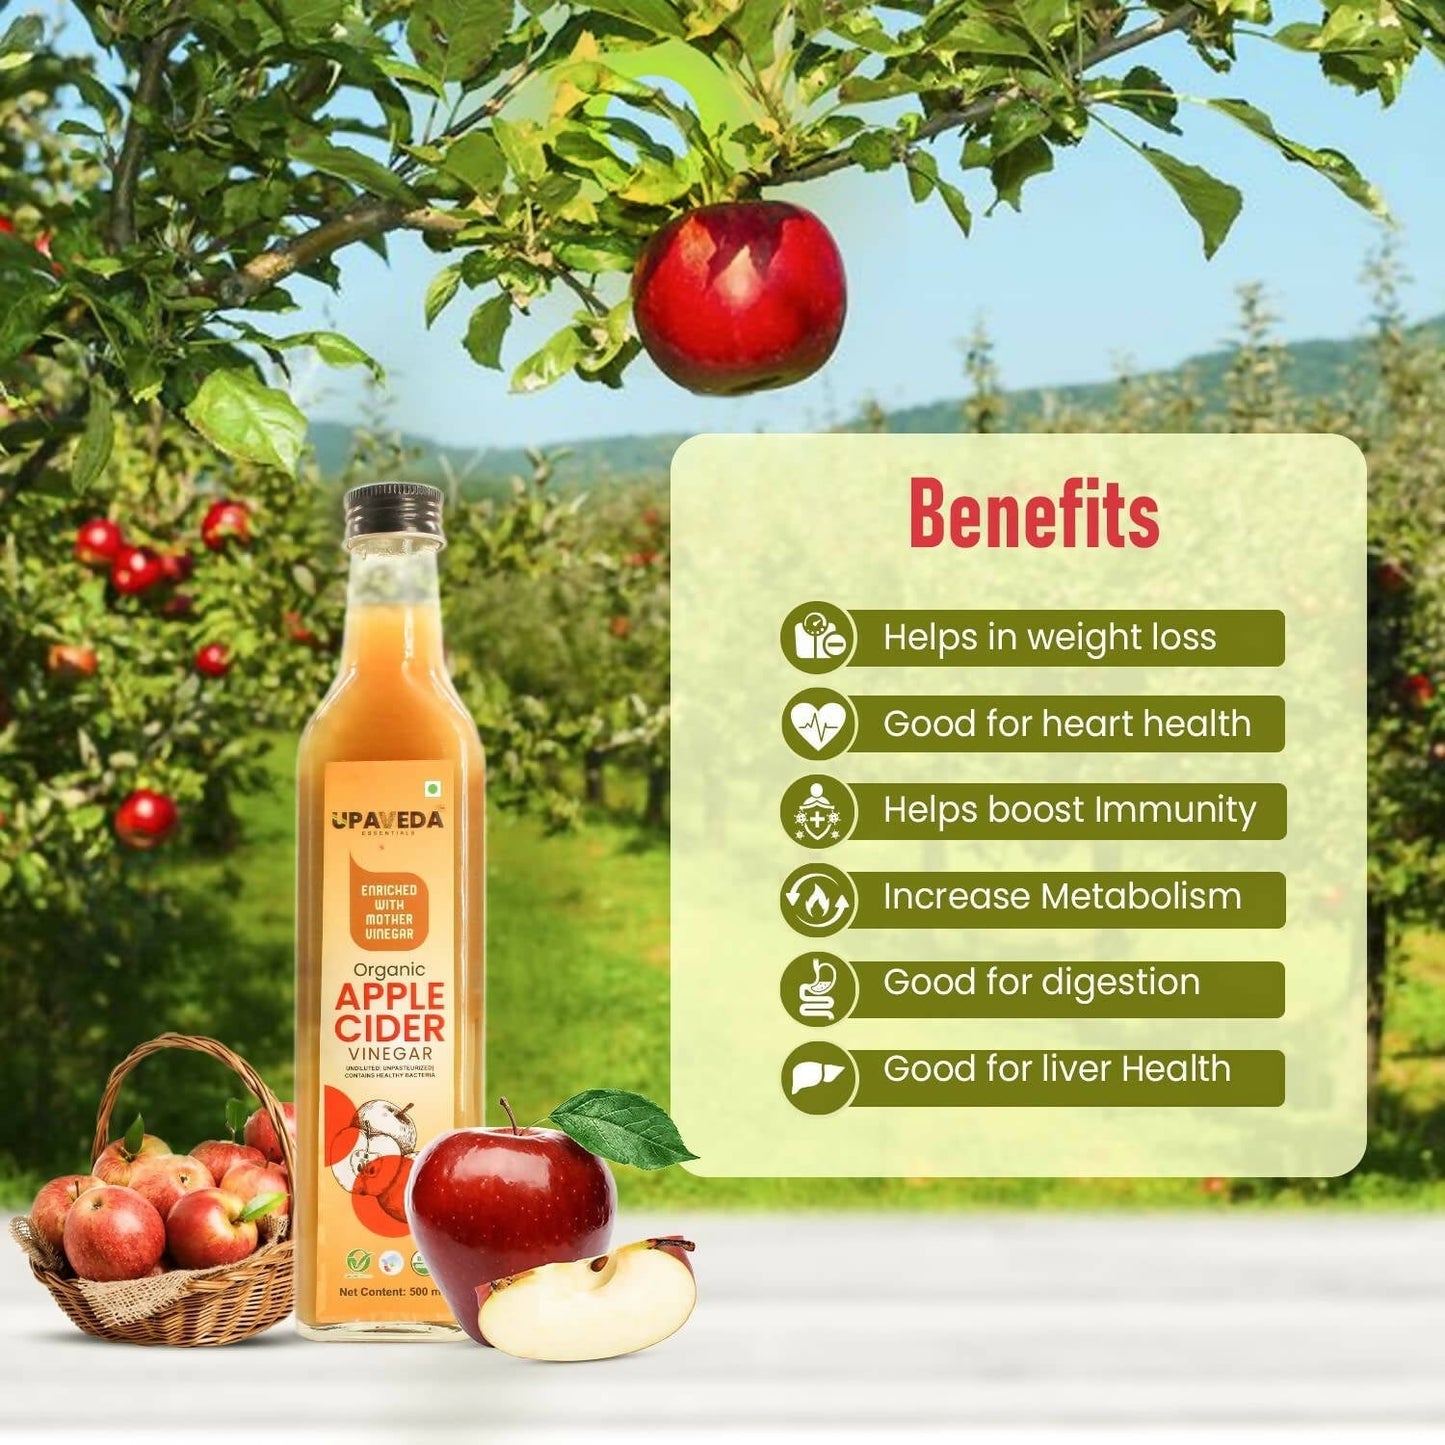 Upaveda Organic Apple Cider Vinegar